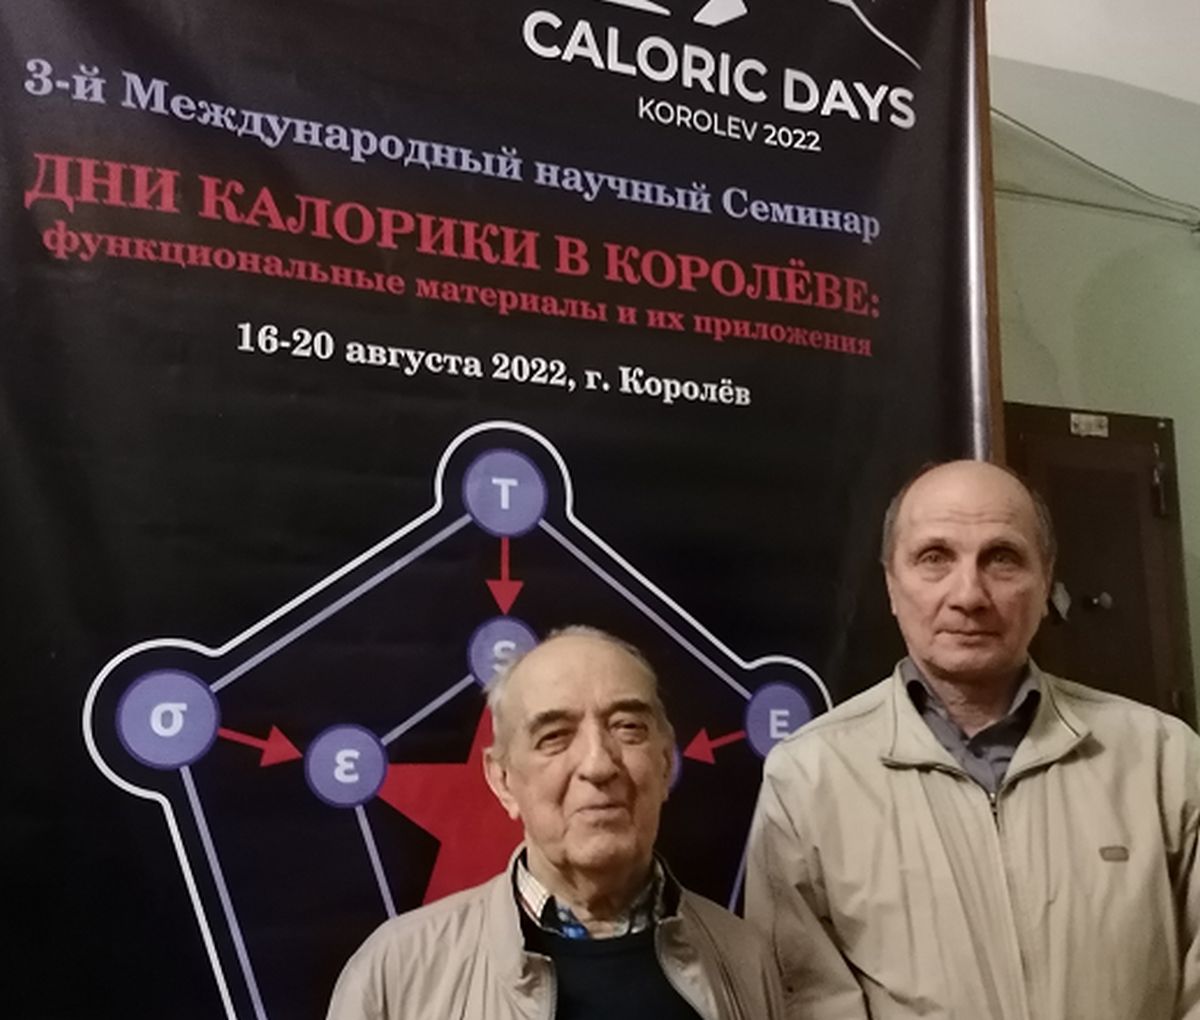 Профессор  Владимир Шавров  (слева) и  доктор физико-математических наук Виктор Коледов (справа) на фоне плаката по международной конференции по калорике 